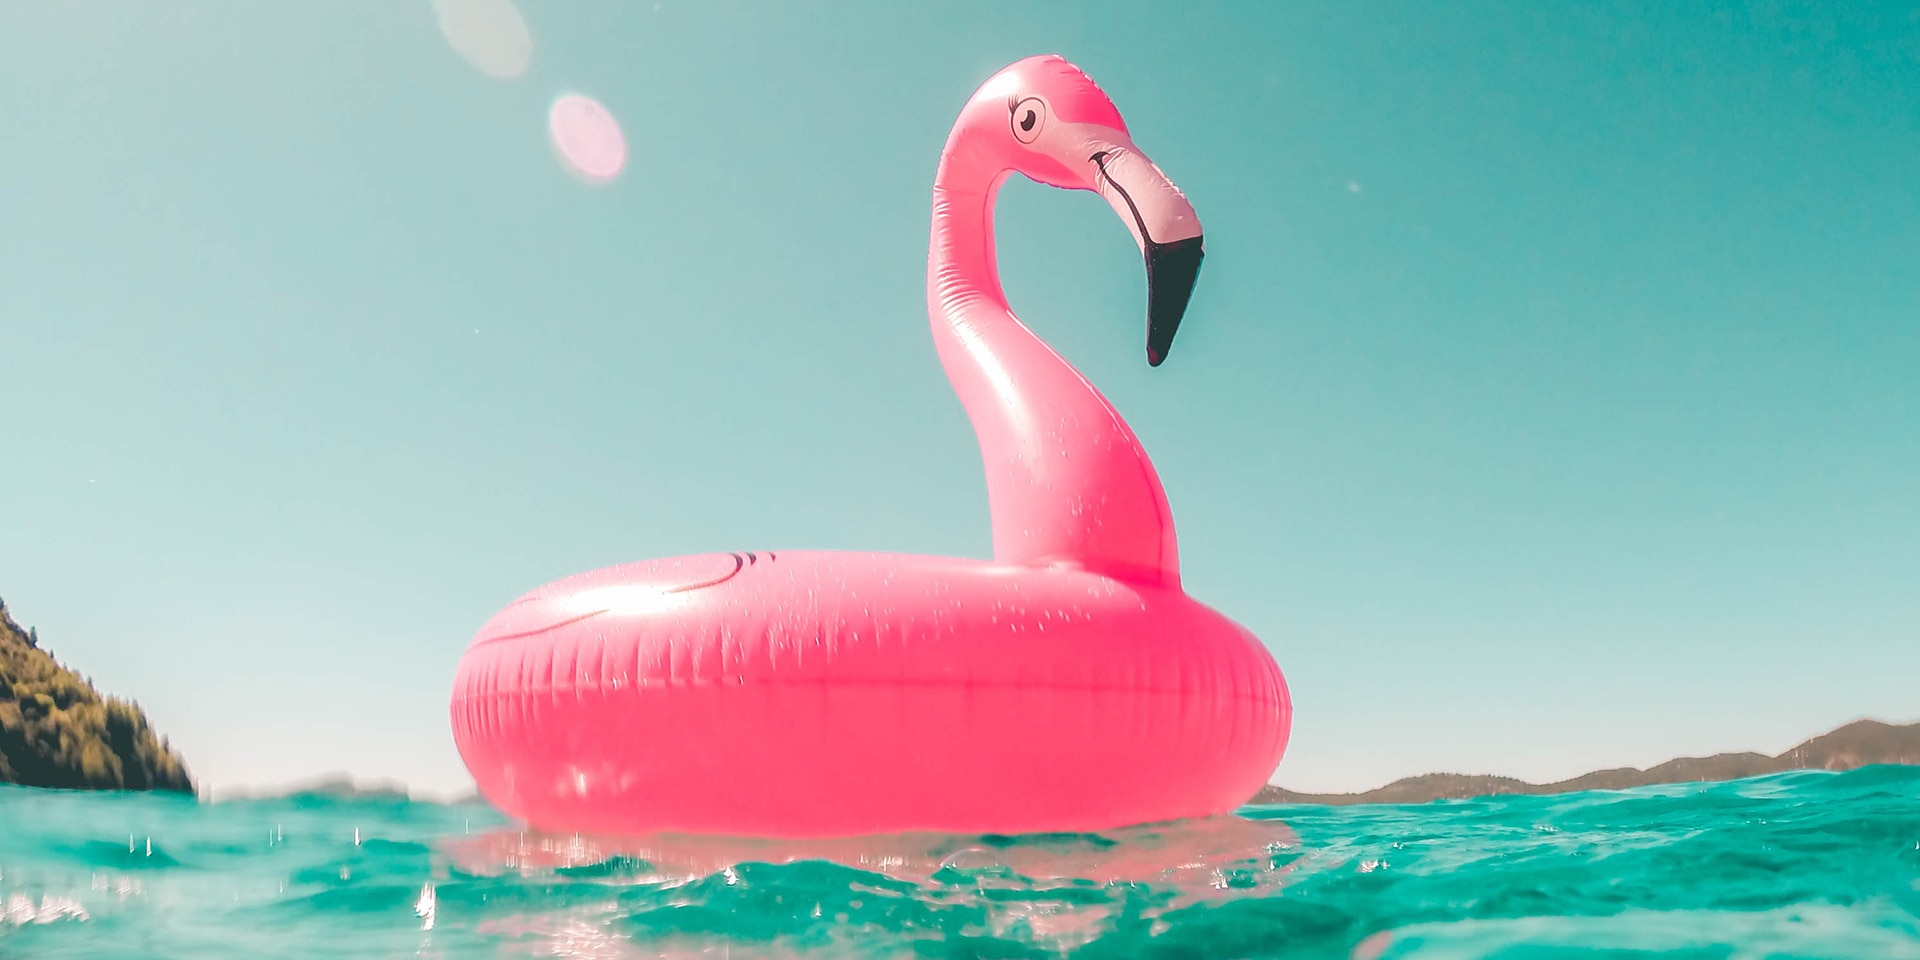 Ein rosaroter, aufblasbarer Flamingo aus Plastik treibt auf dem türkisfarbenen Meer.